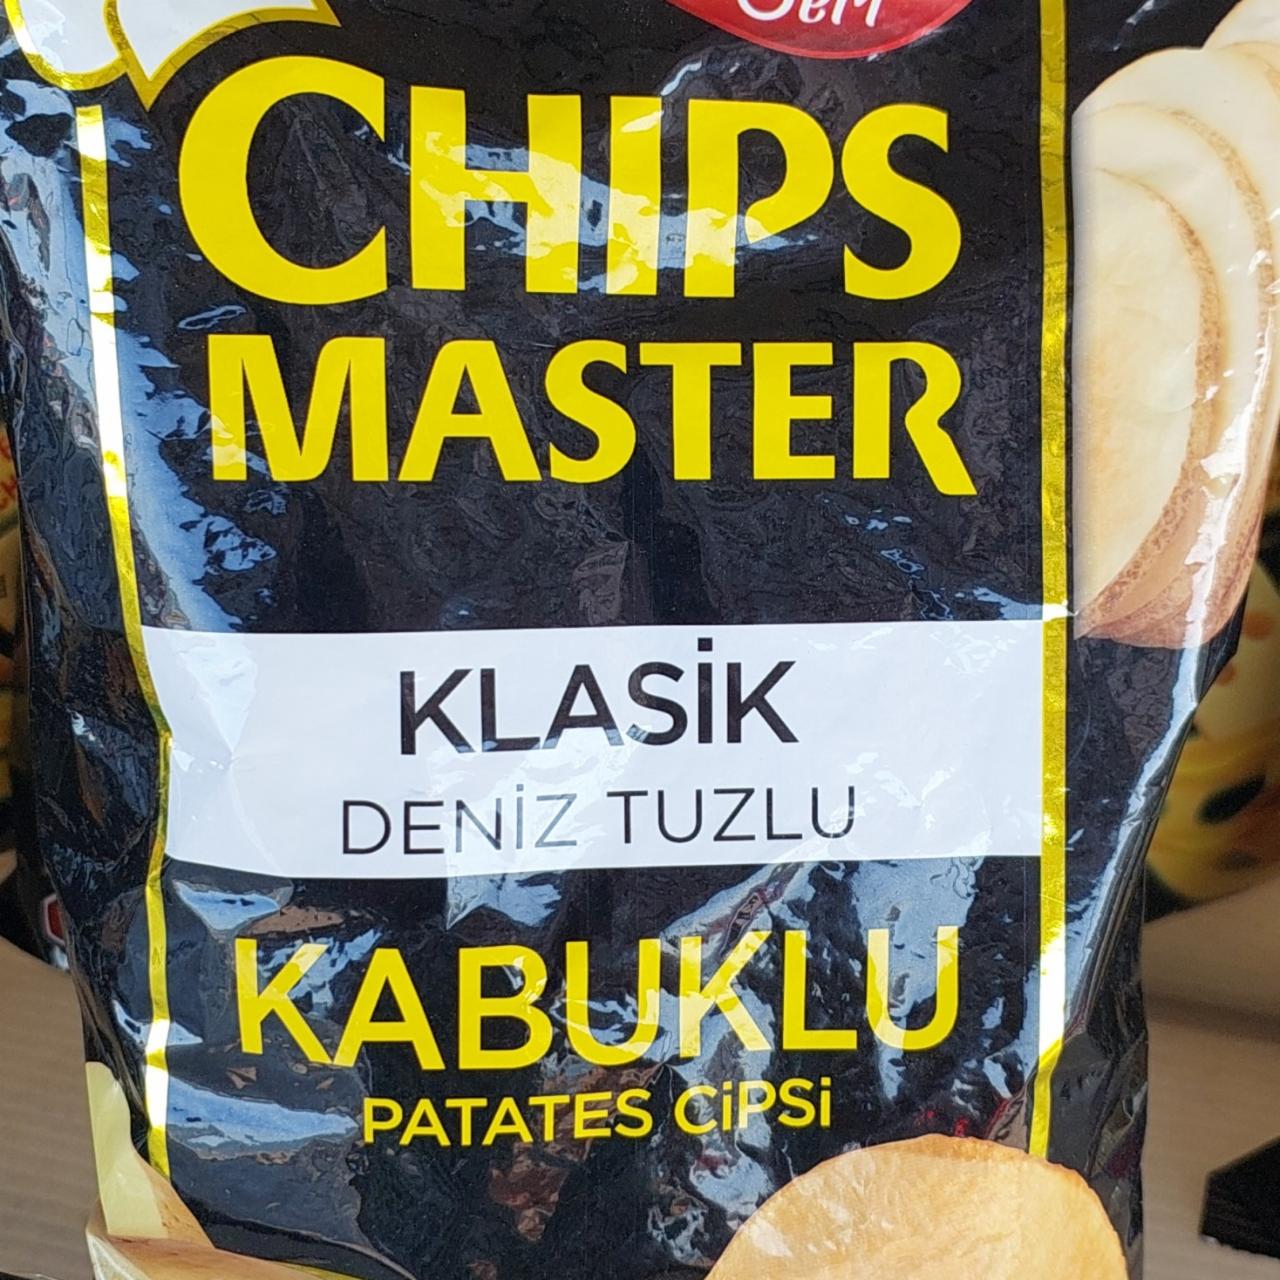 Фото - Чипсы Klassik Deniz Tuzlu Chips Master